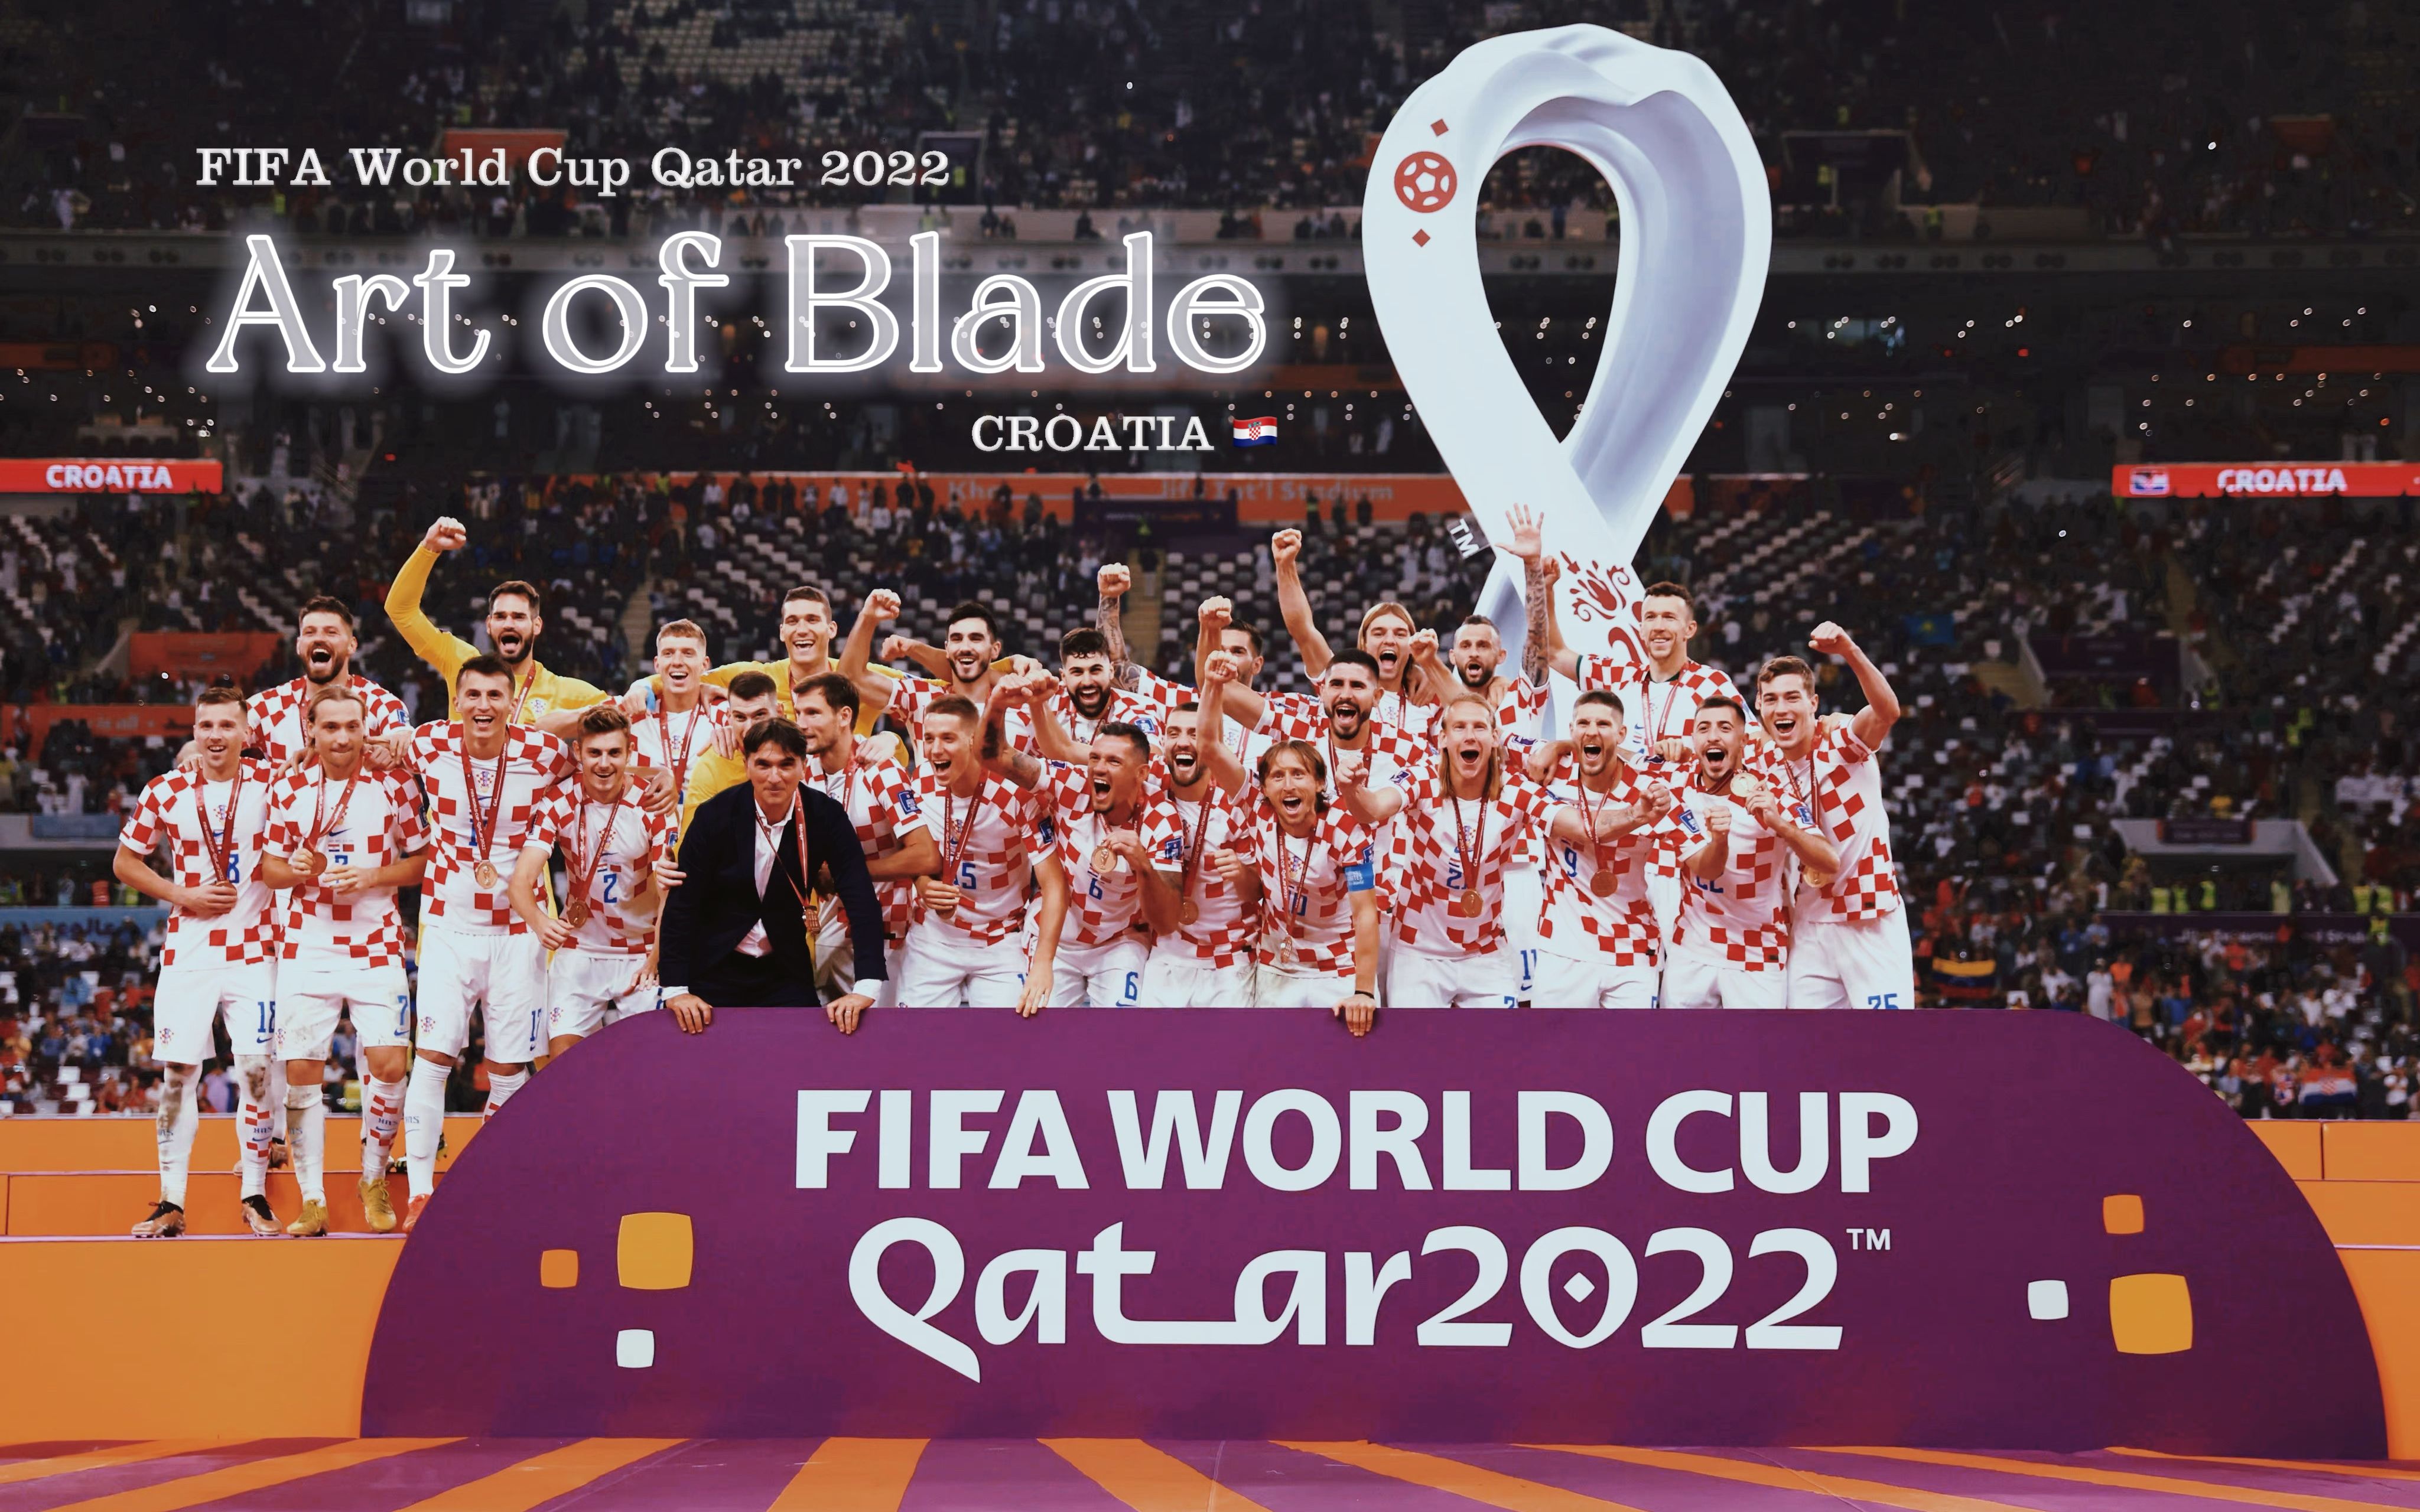 【2022世界杯】Art of Blade-克罗地亚国家队燃向混剪